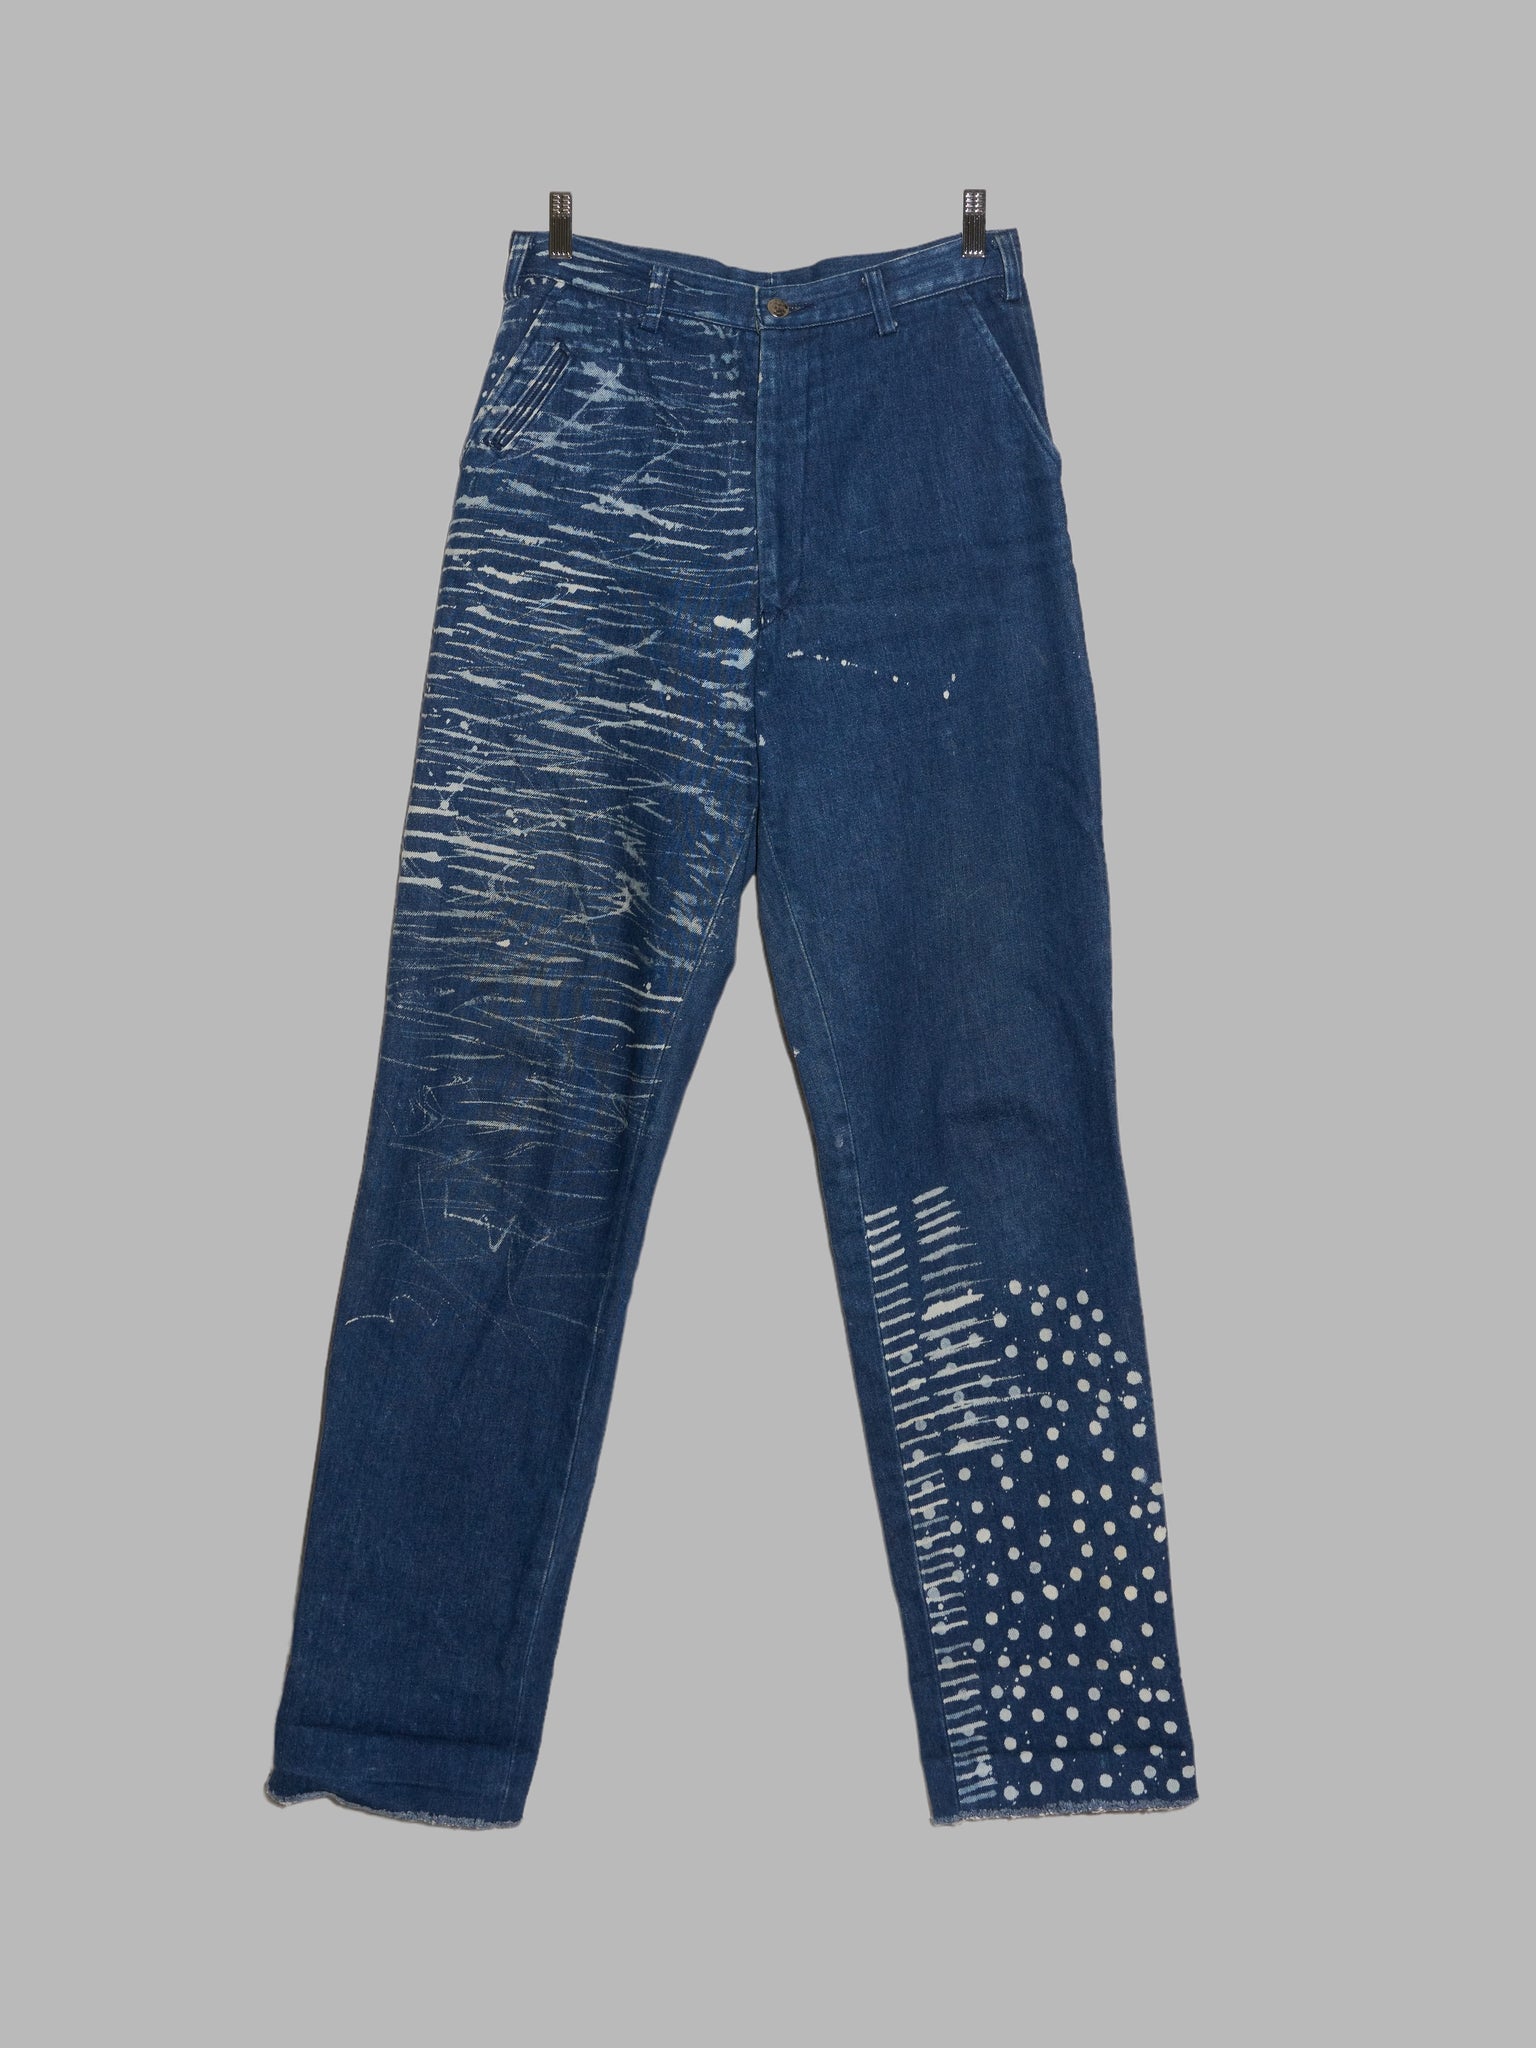 Jun Men 1990s bleached indigo cotton denim jeans - size 78